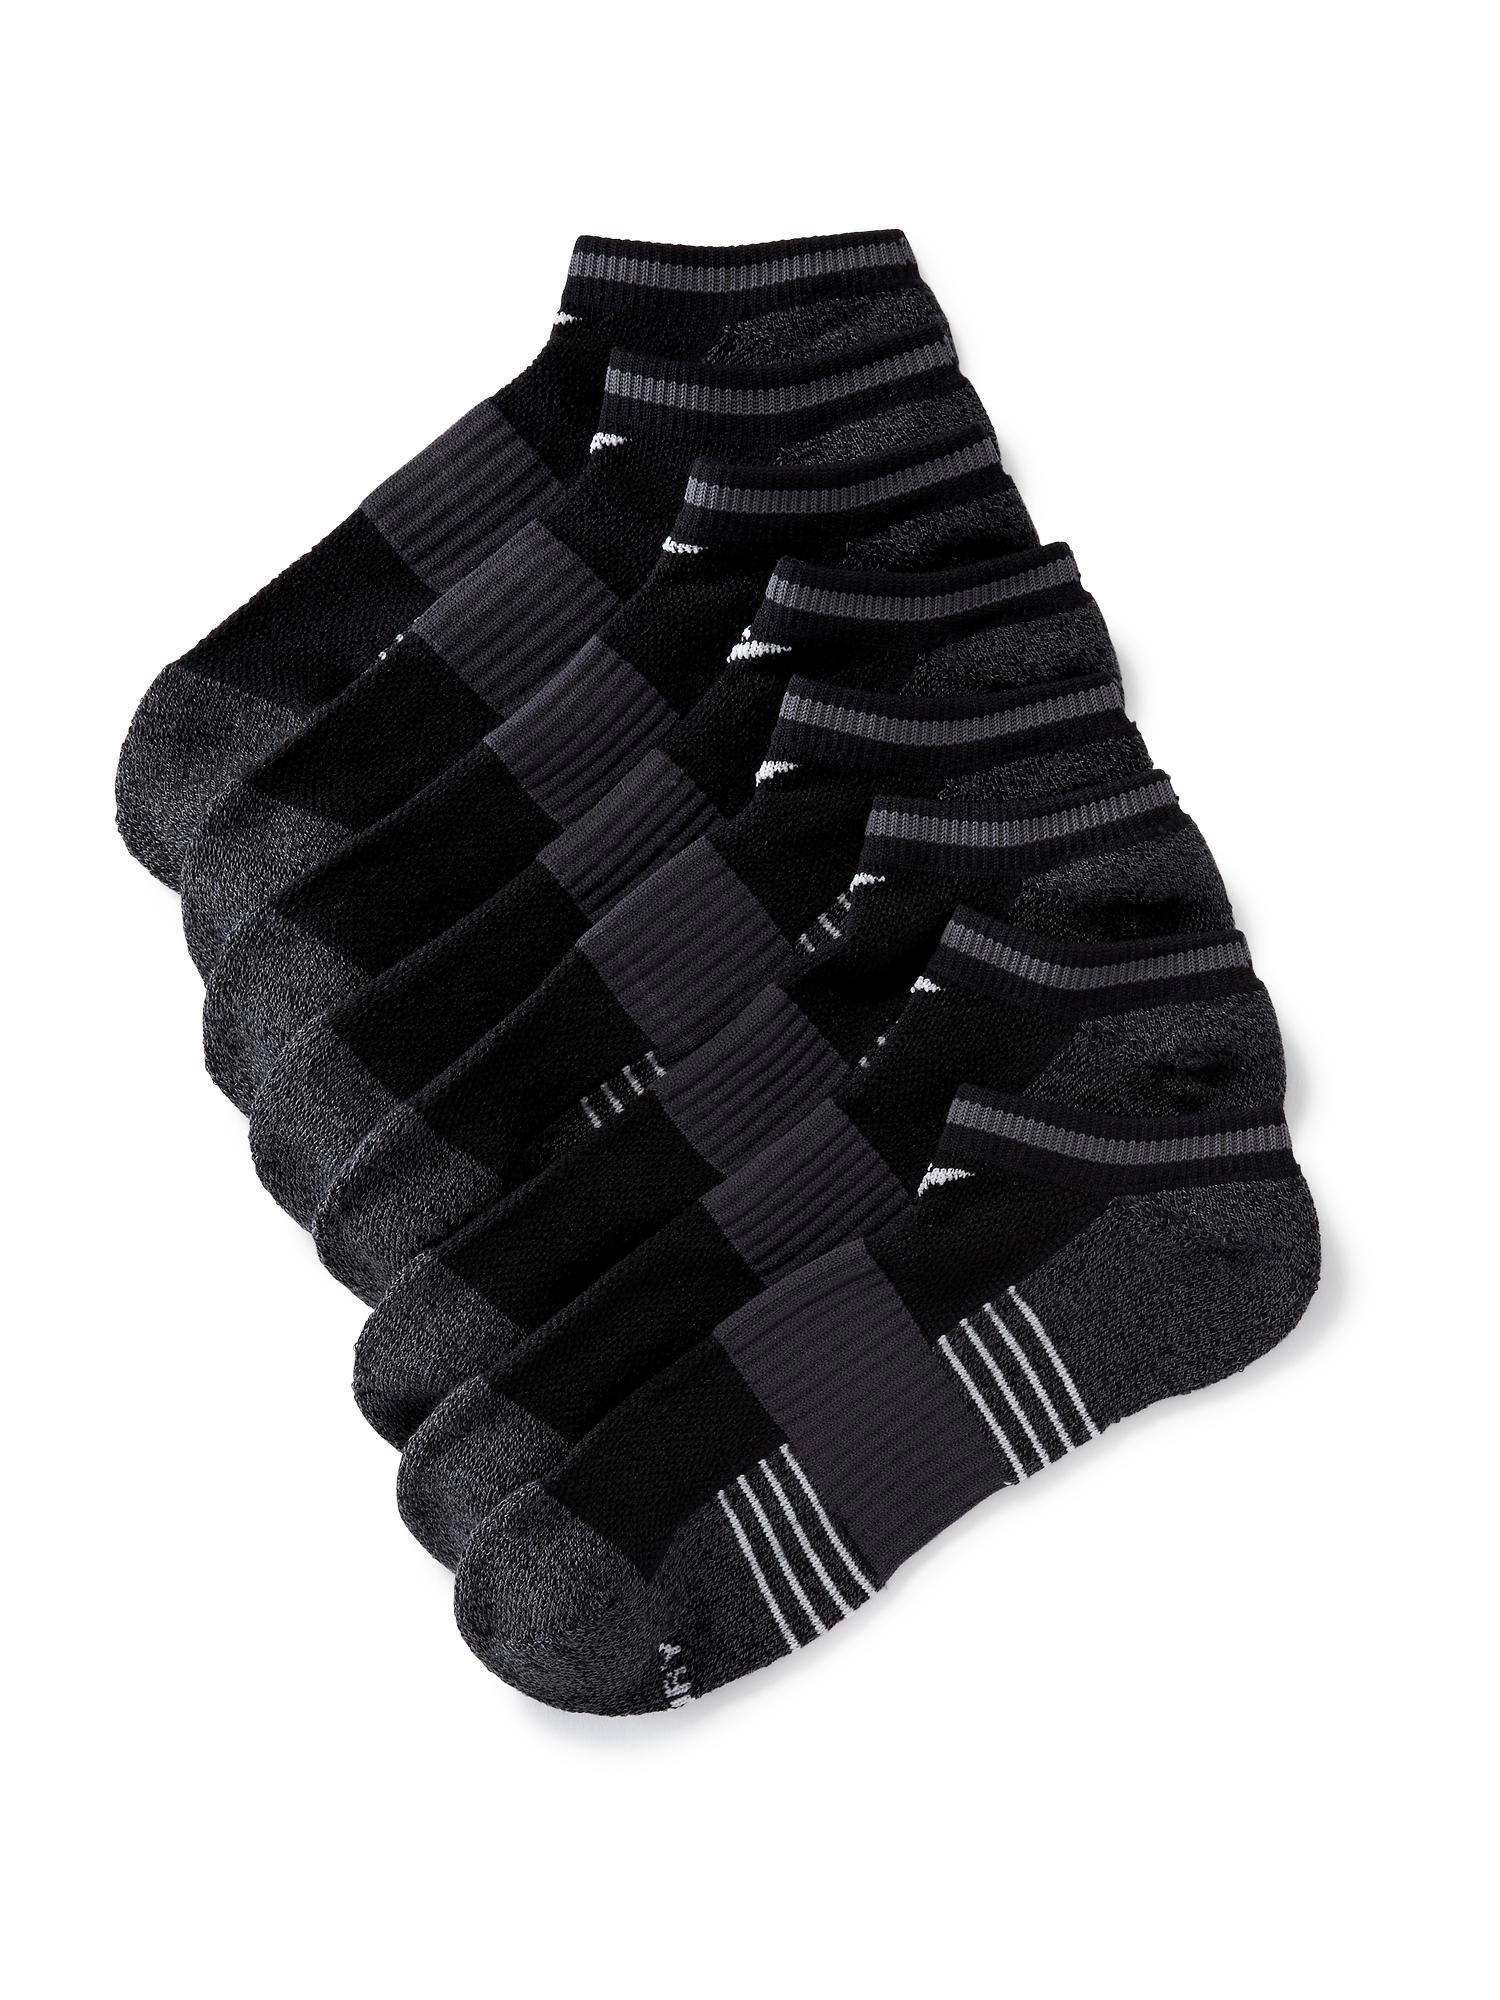 Go-Dry Training Socks 3-Pack for Men | Old Navy